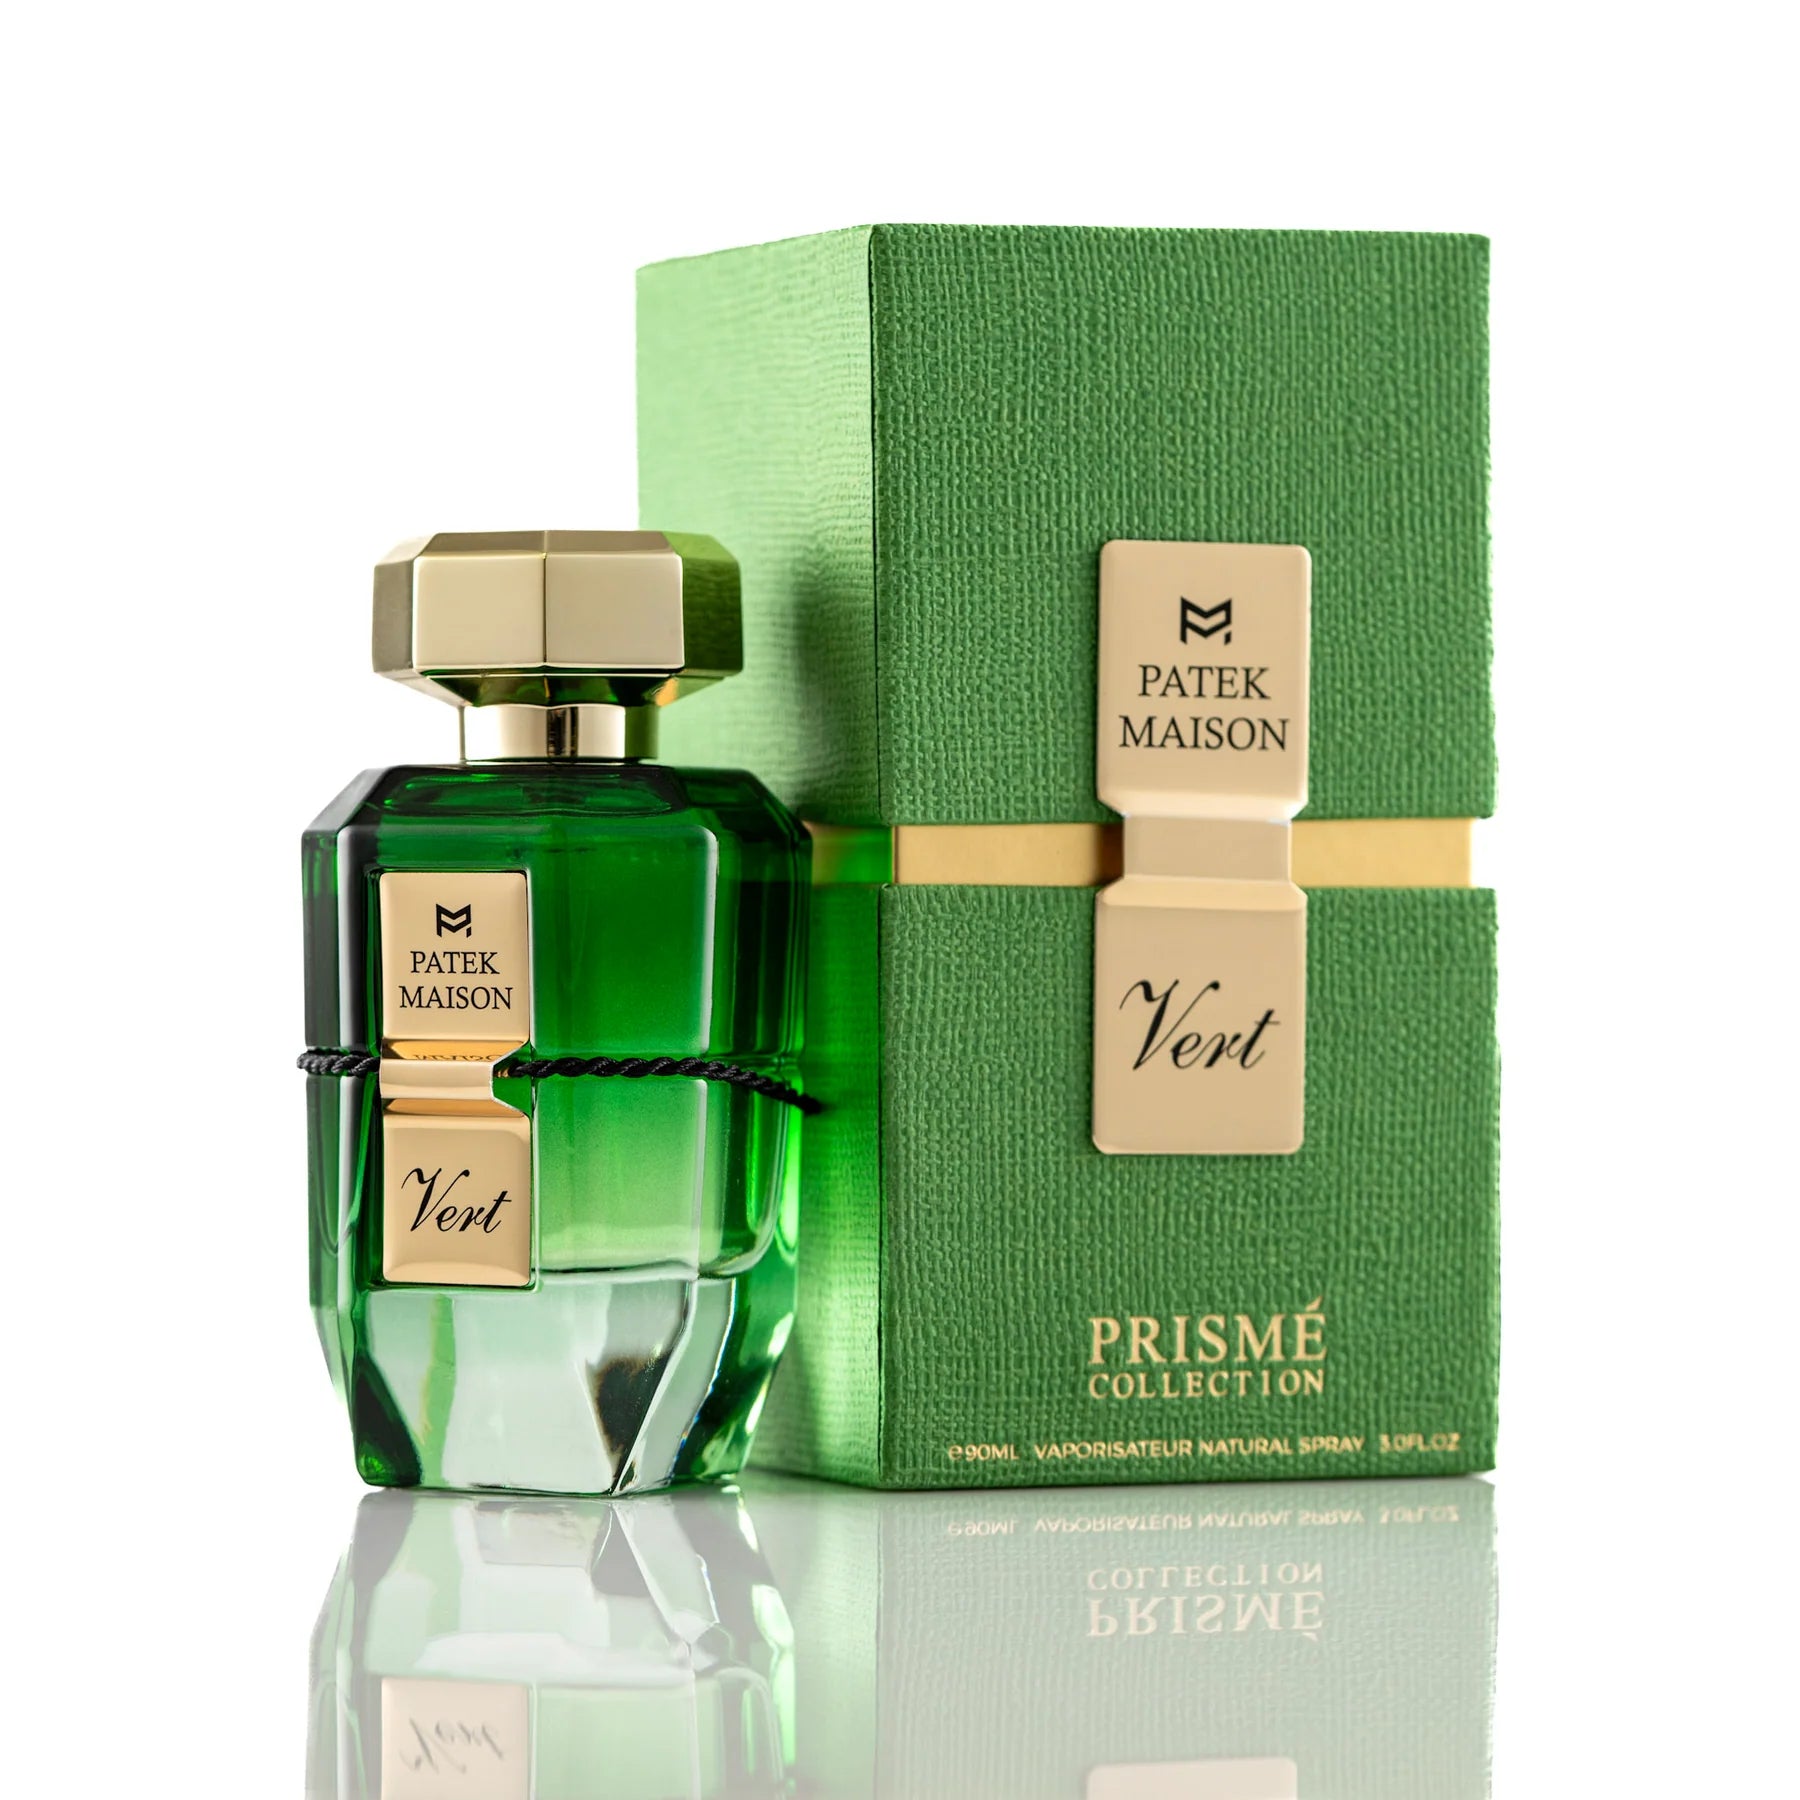 Prisme Vert Eau De Parfum Spray for Men and Women by Patek Maison, Product image 1